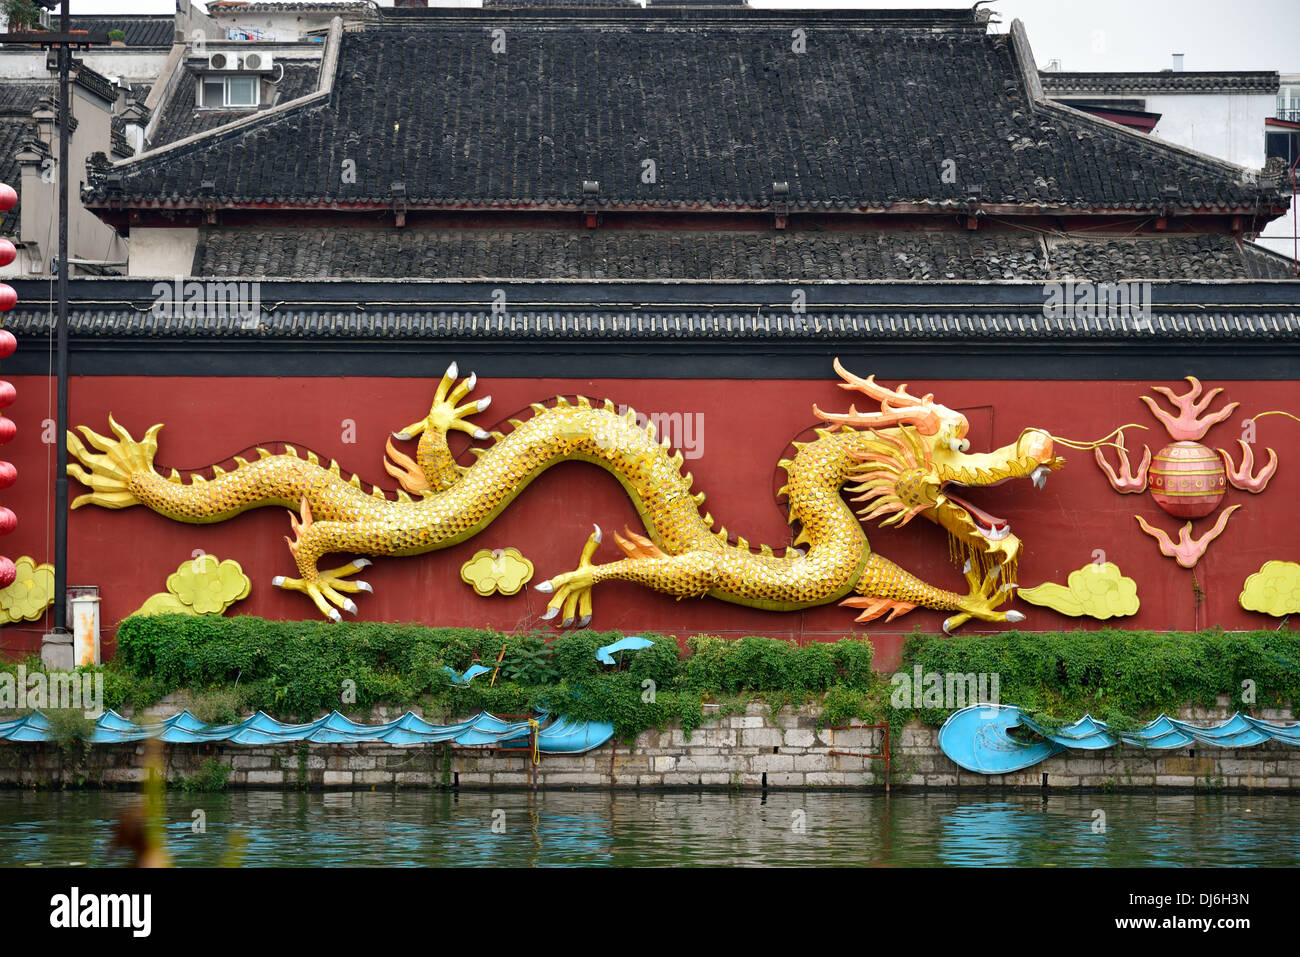 Golden Dragon, sobre una pared roja por el Río Qinhuai. Nanjing, provincia de Jiangsu, China. Foto de stock